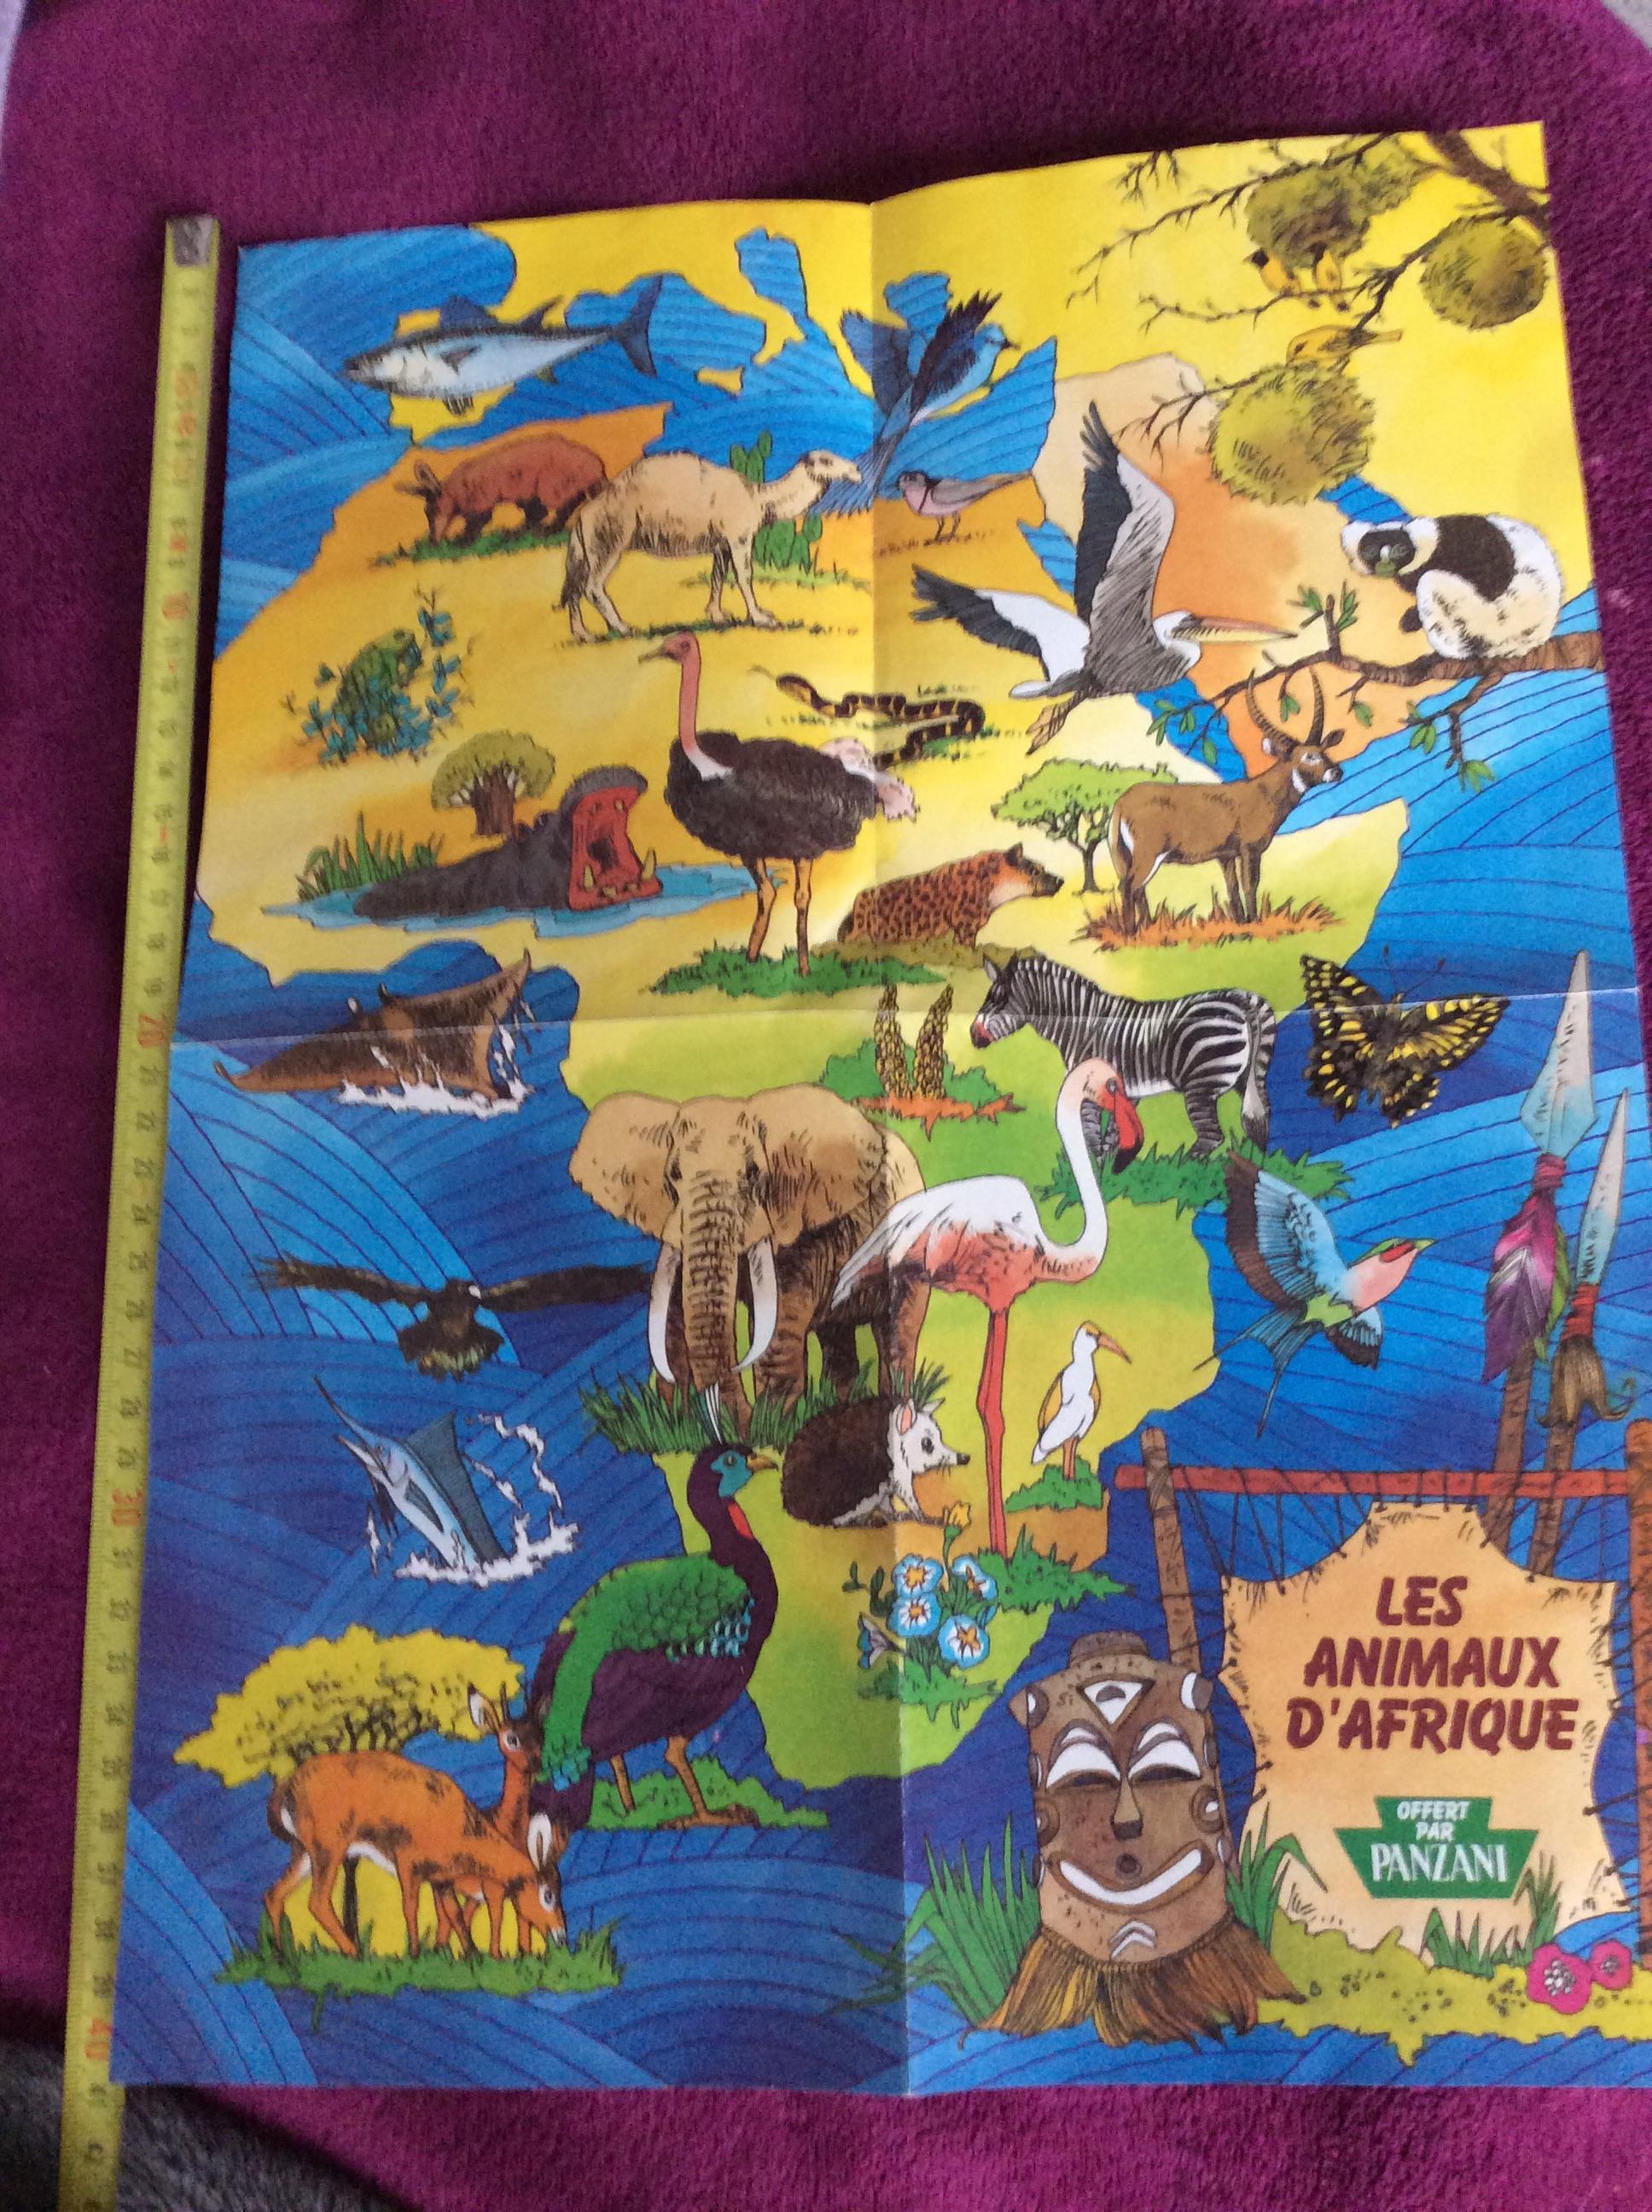 troc de troc poster annees 90 les animaux d’afrique offert par panzani 30/40 image 0